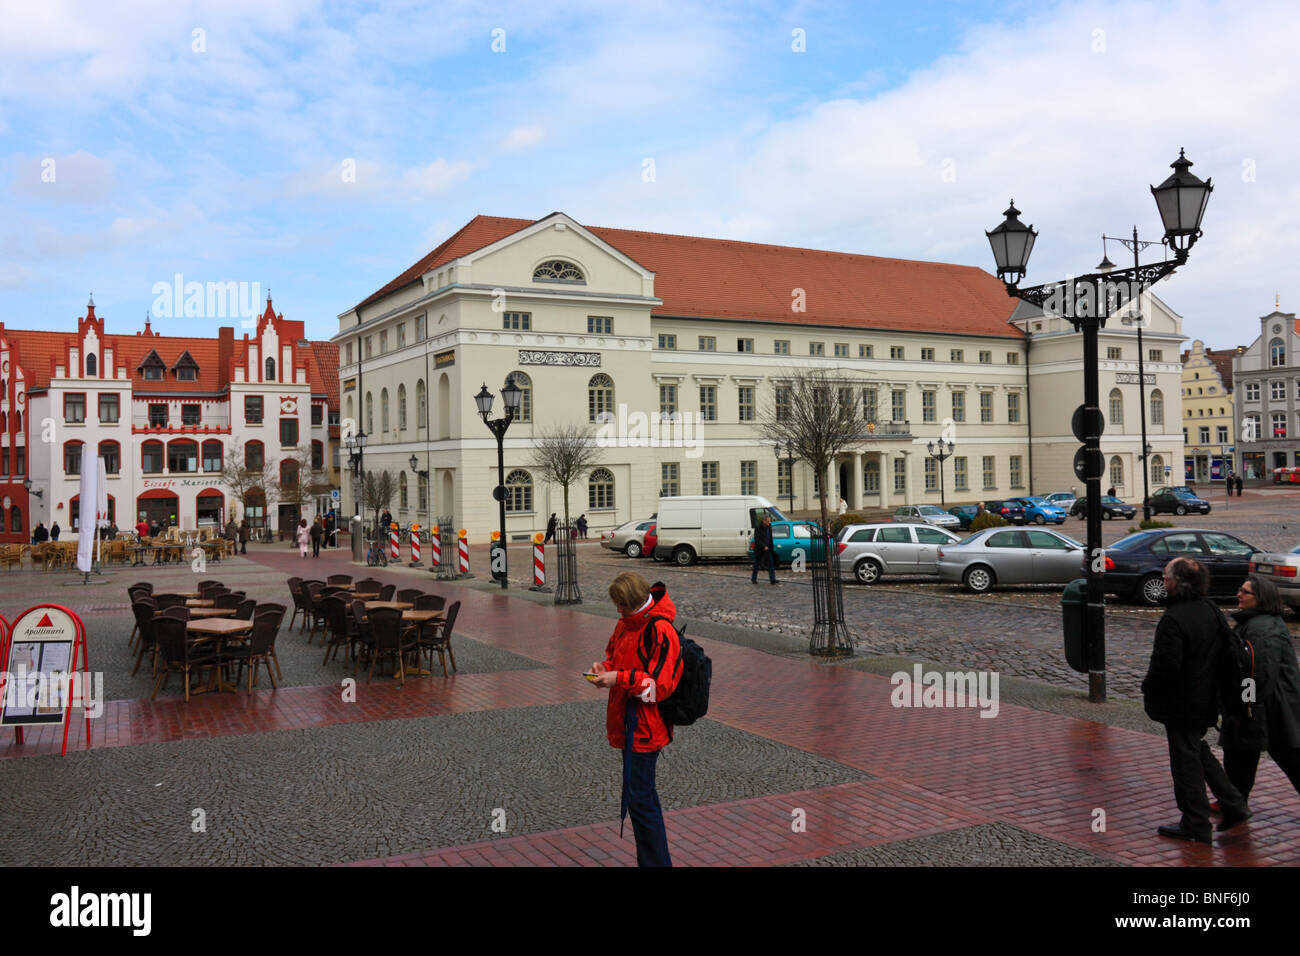 El centro de la ciudad con mercado y Ayuntamiento en Wismar, Alemania Foto de stock